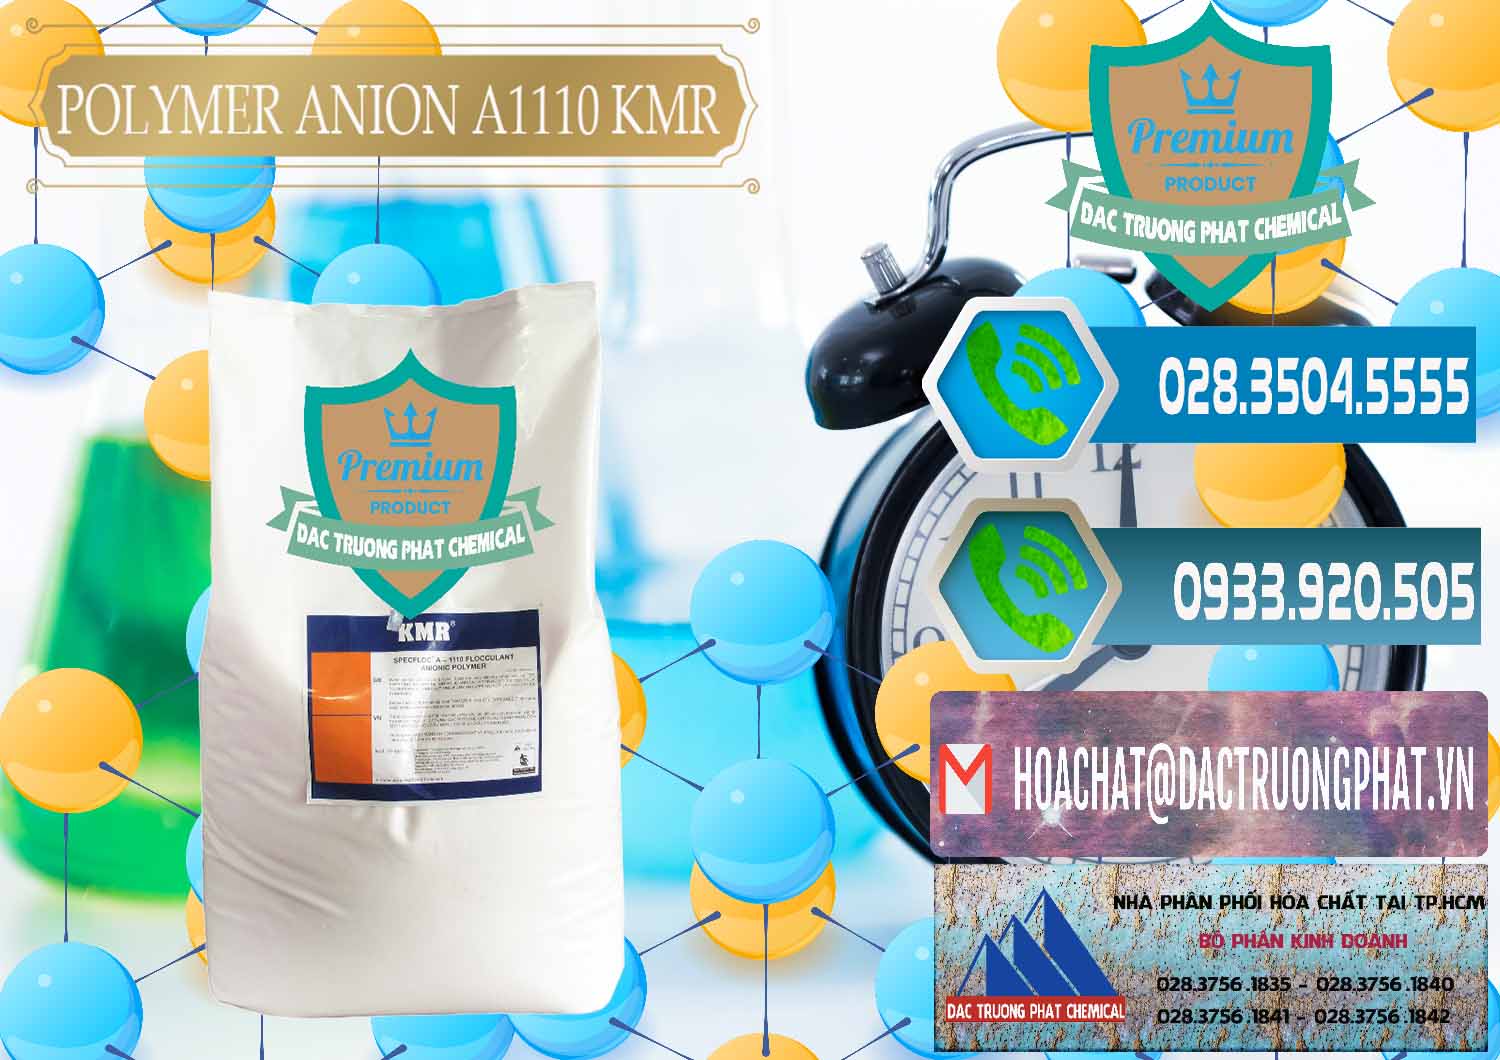 Đơn vị phân phối và bán Polymer Anion A1110 - KMR Anh Quốc England - 0118 - Công ty cung cấp và kinh doanh hóa chất tại TP.HCM - congtyhoachat.net